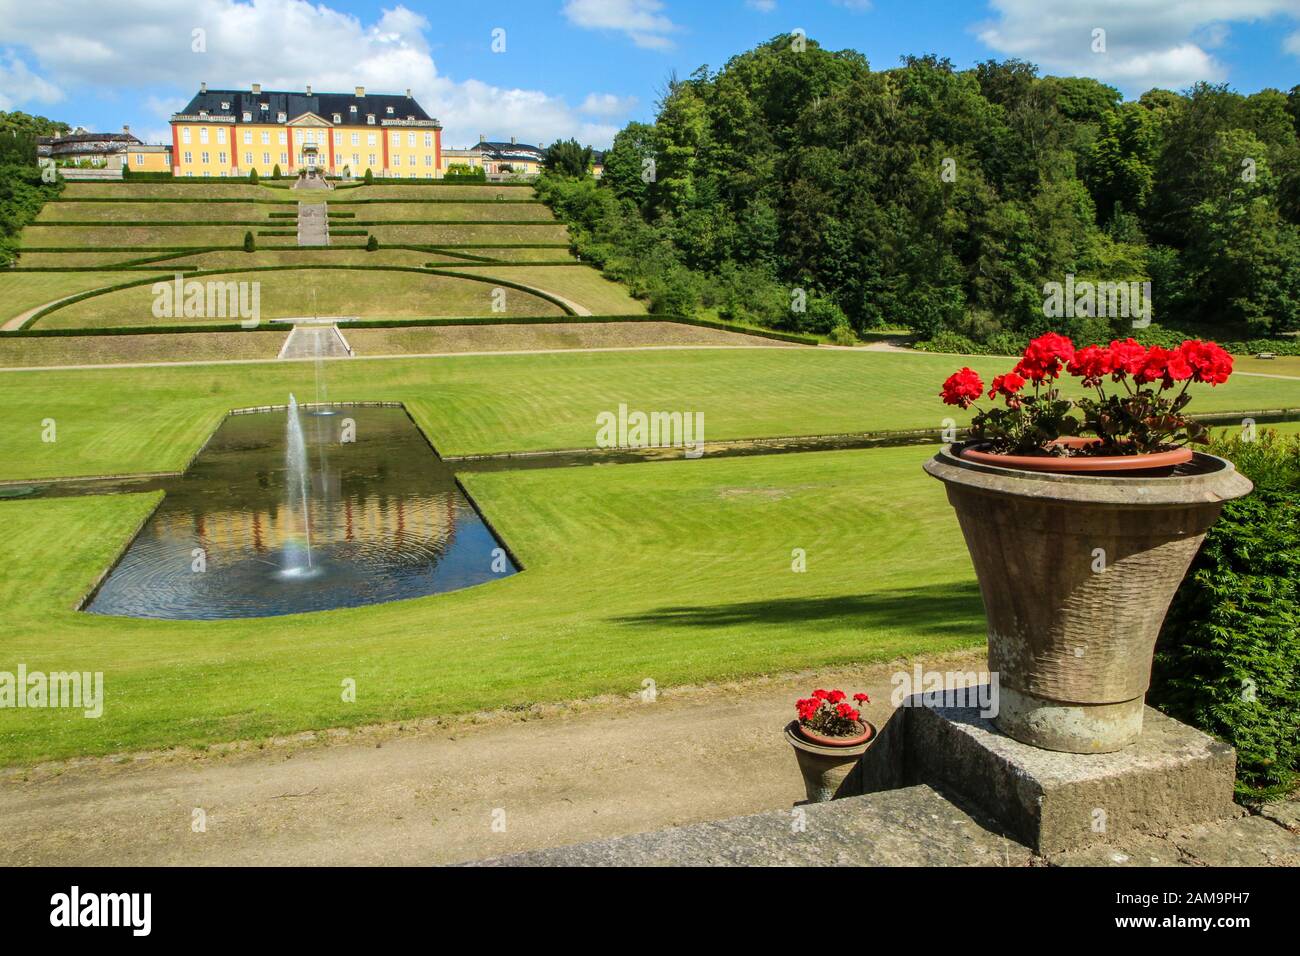 Das Schloss Ledreborg in Dänemark mit seinem schönen Park. Ein schöner Anblick für die Touristen. Stockfoto